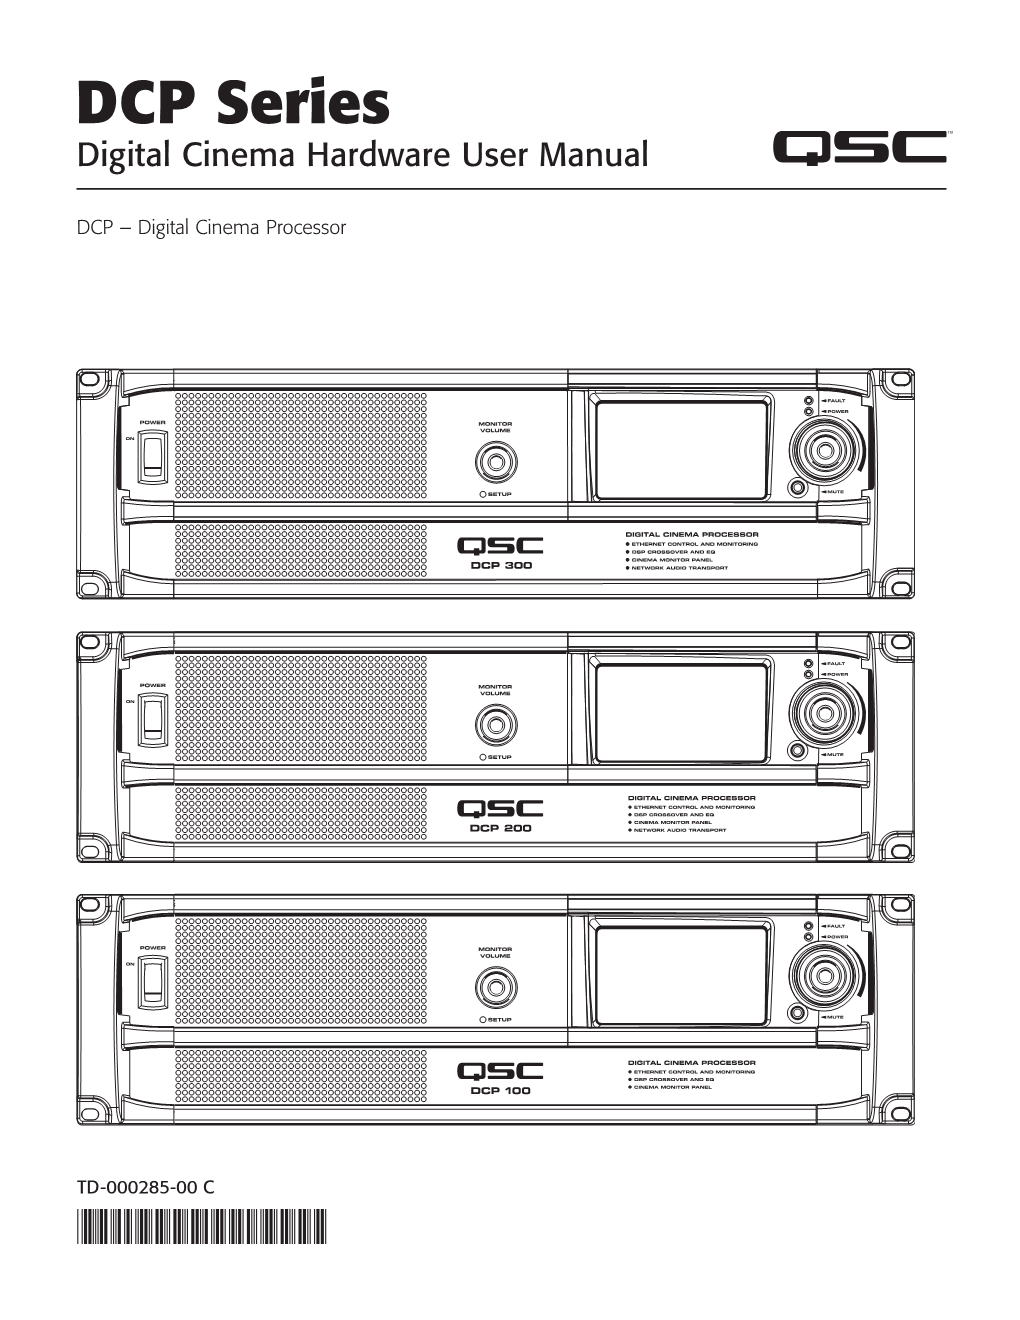 DCP Series User Manual